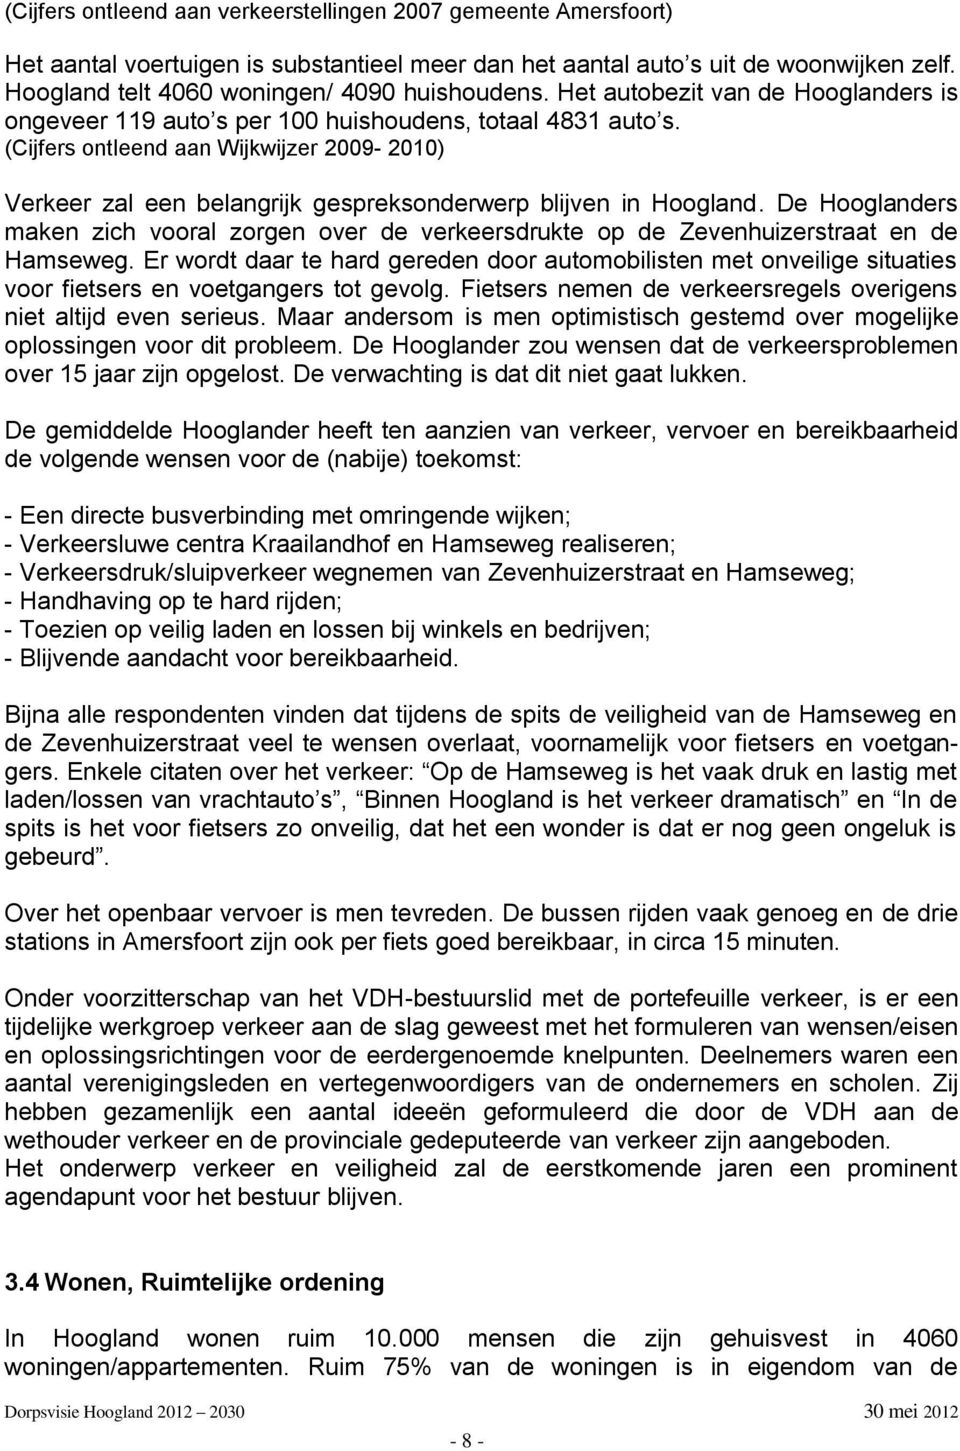 (Cijfers ontleend aan Wijkwijzer 2009-2010) Verkeer zal een belangrijk gespreksonderwerp blijven in Hoogland.